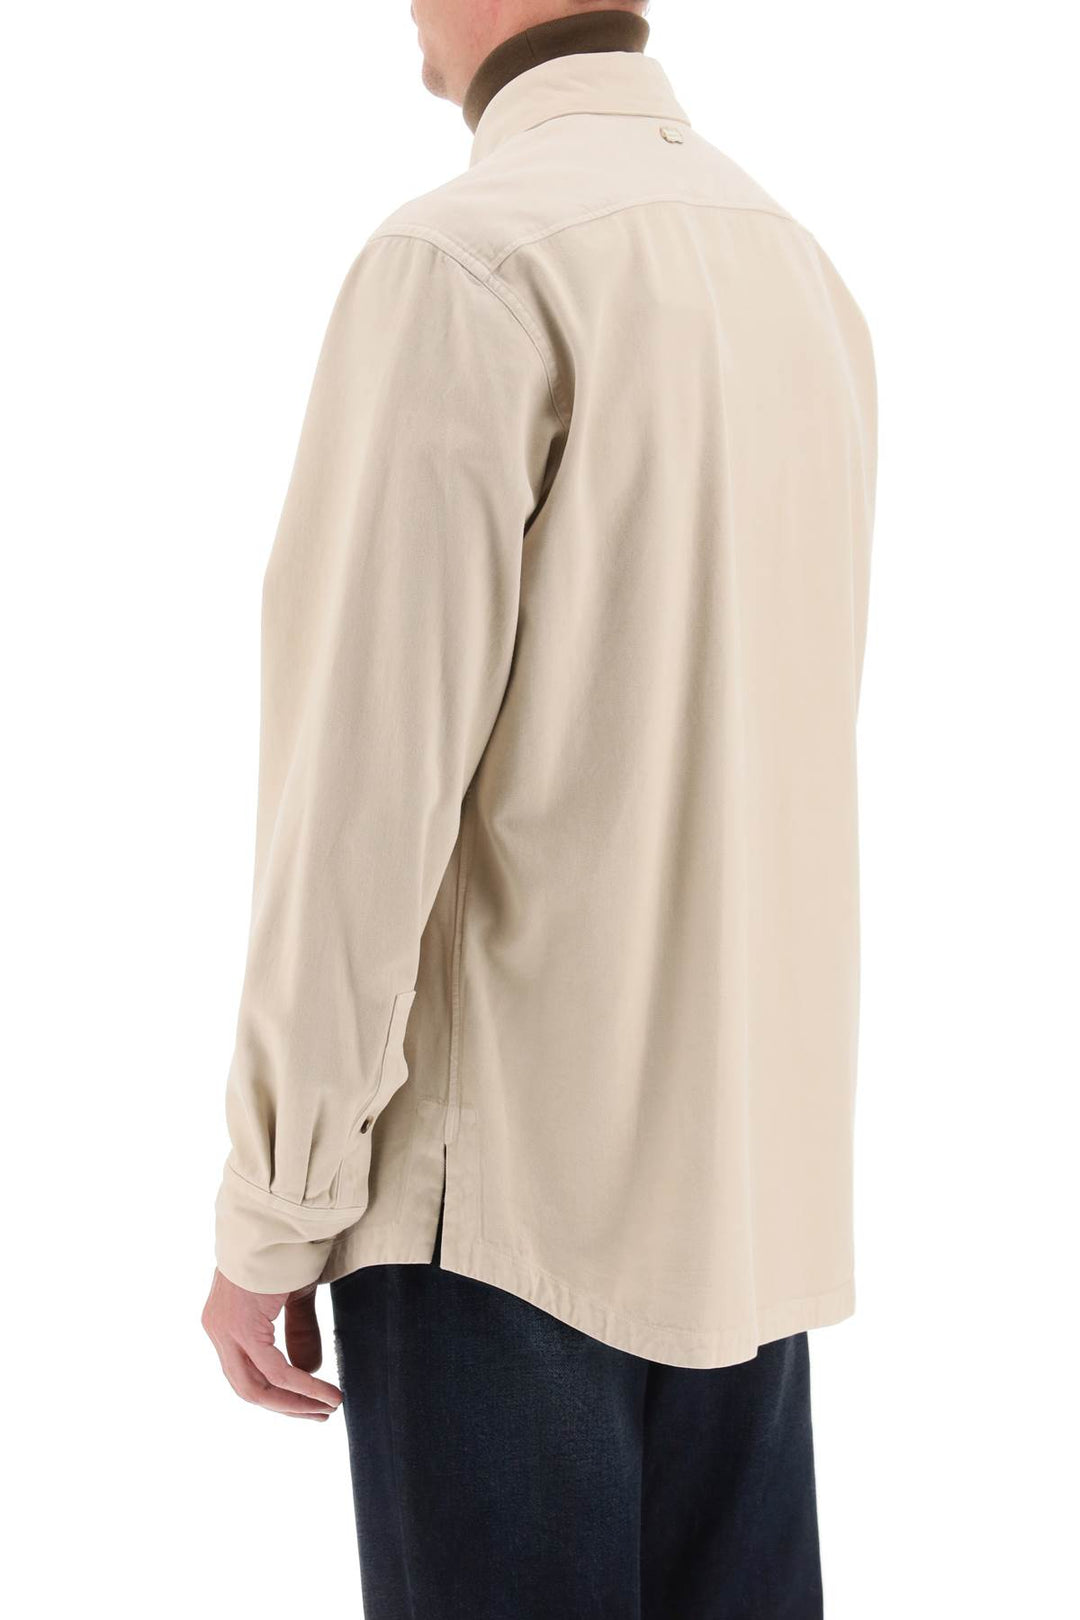 Agnona cotton & cashmere shirt-2